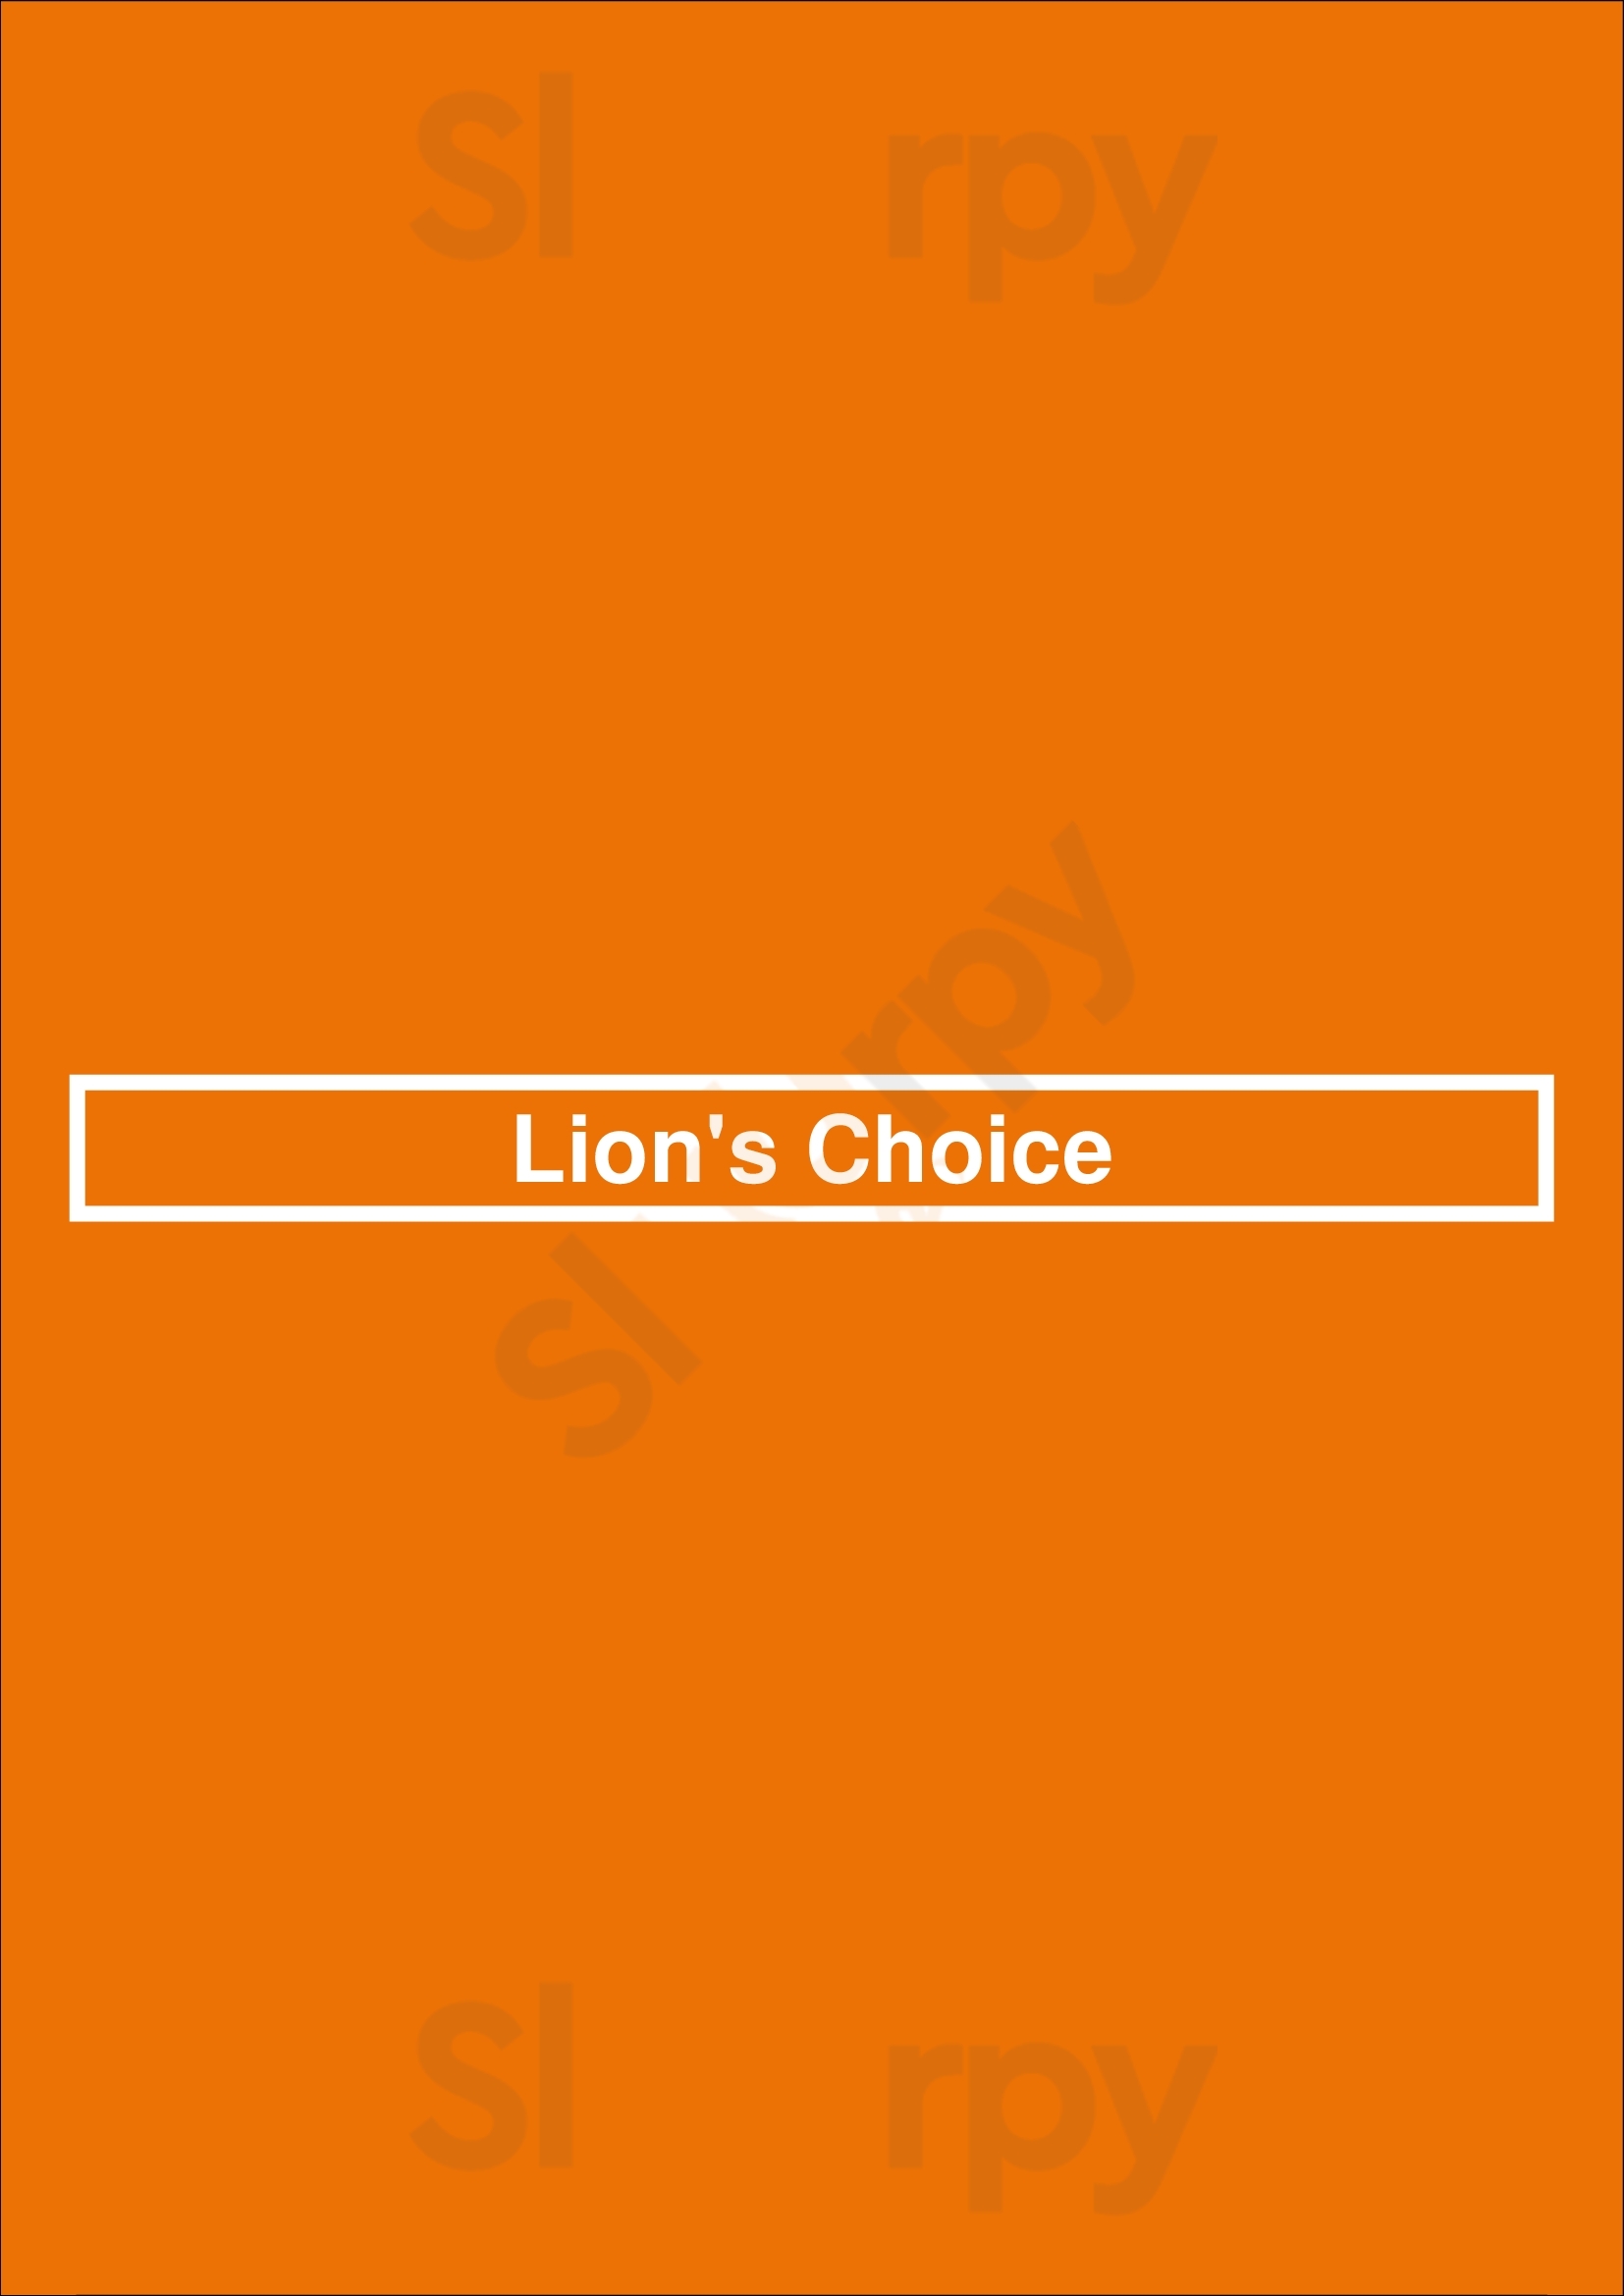 Lion's Choice Saint Louis Menu - 1